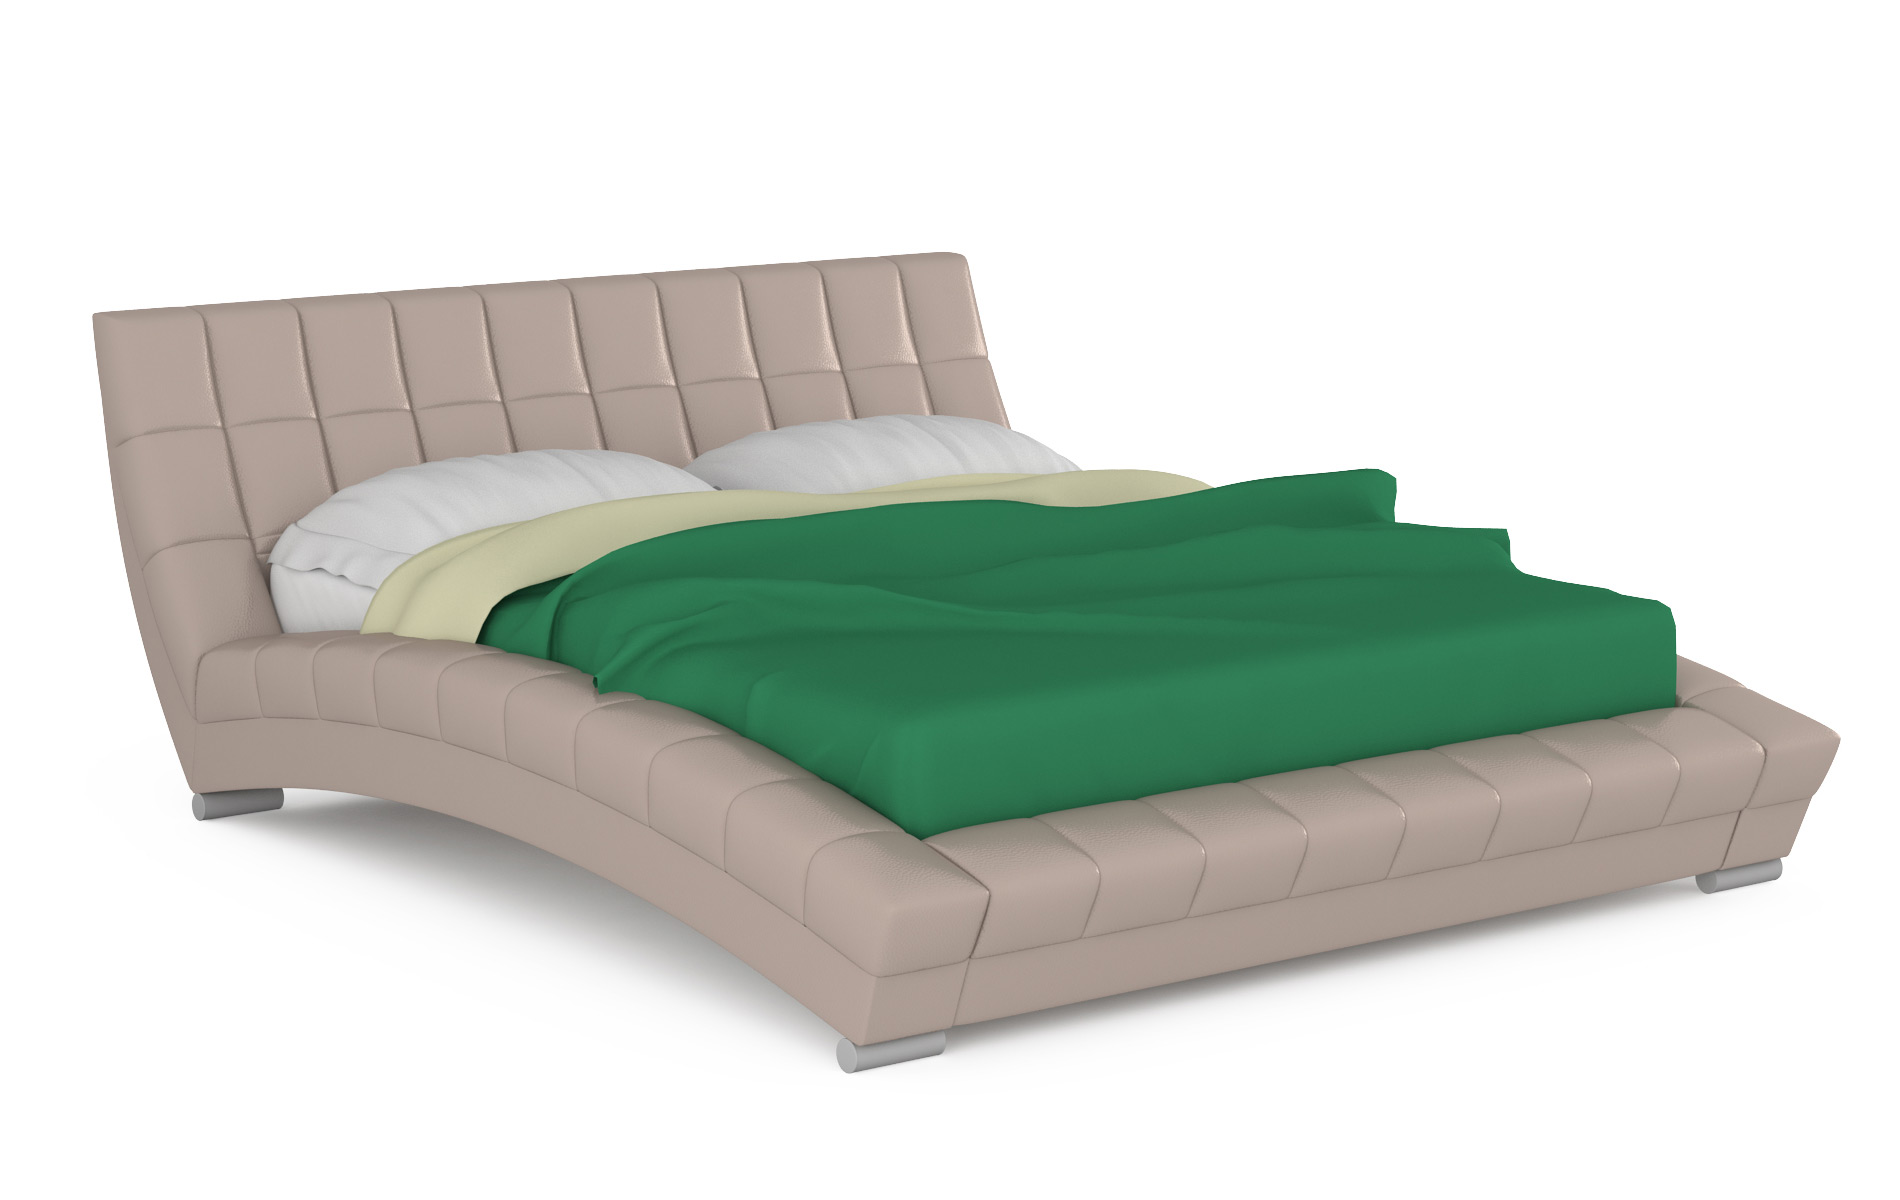 Кровать интерьерная Mobi Оливия 200х250х88 см, бежевый